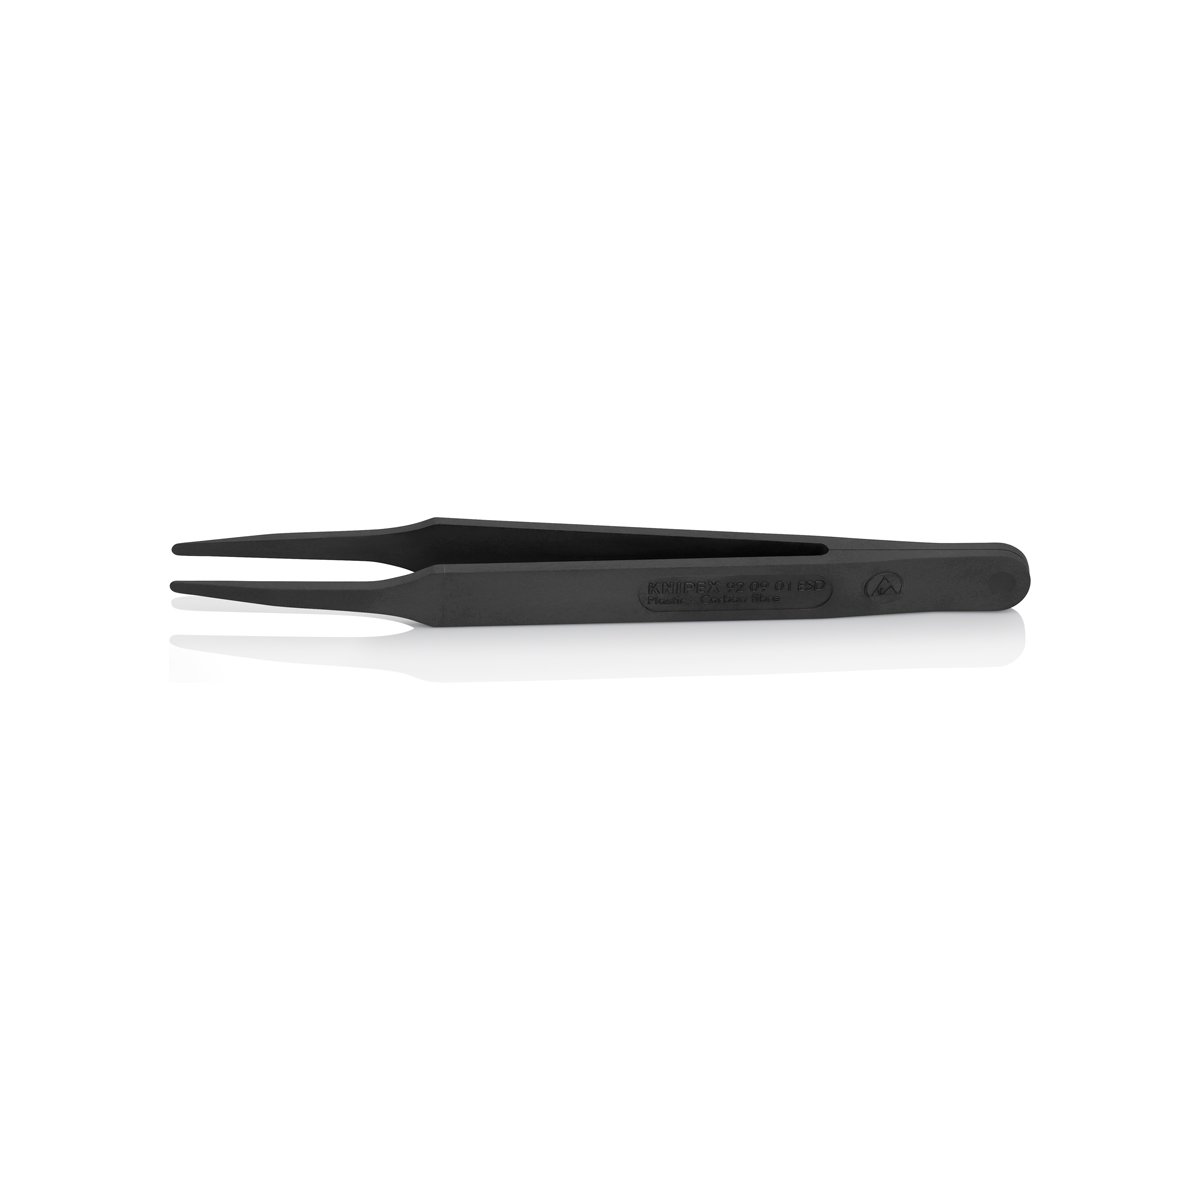 Пинцет углепластиковый ESD, 115 мм, гладкие прямые тупые губки, чёрный матовый